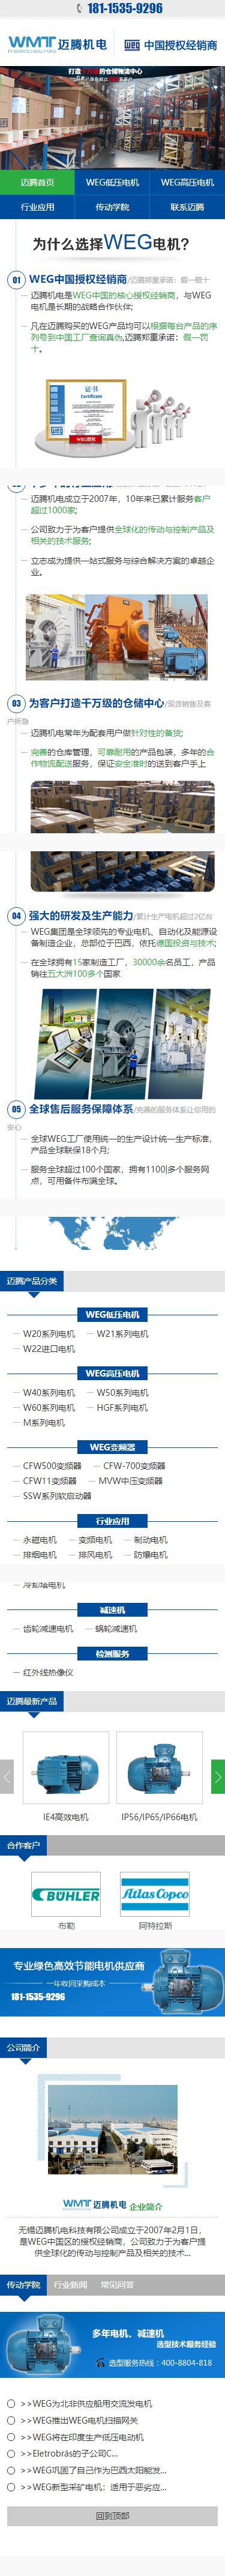 邁騰WEG電機營銷型網站 手機端預覽圖